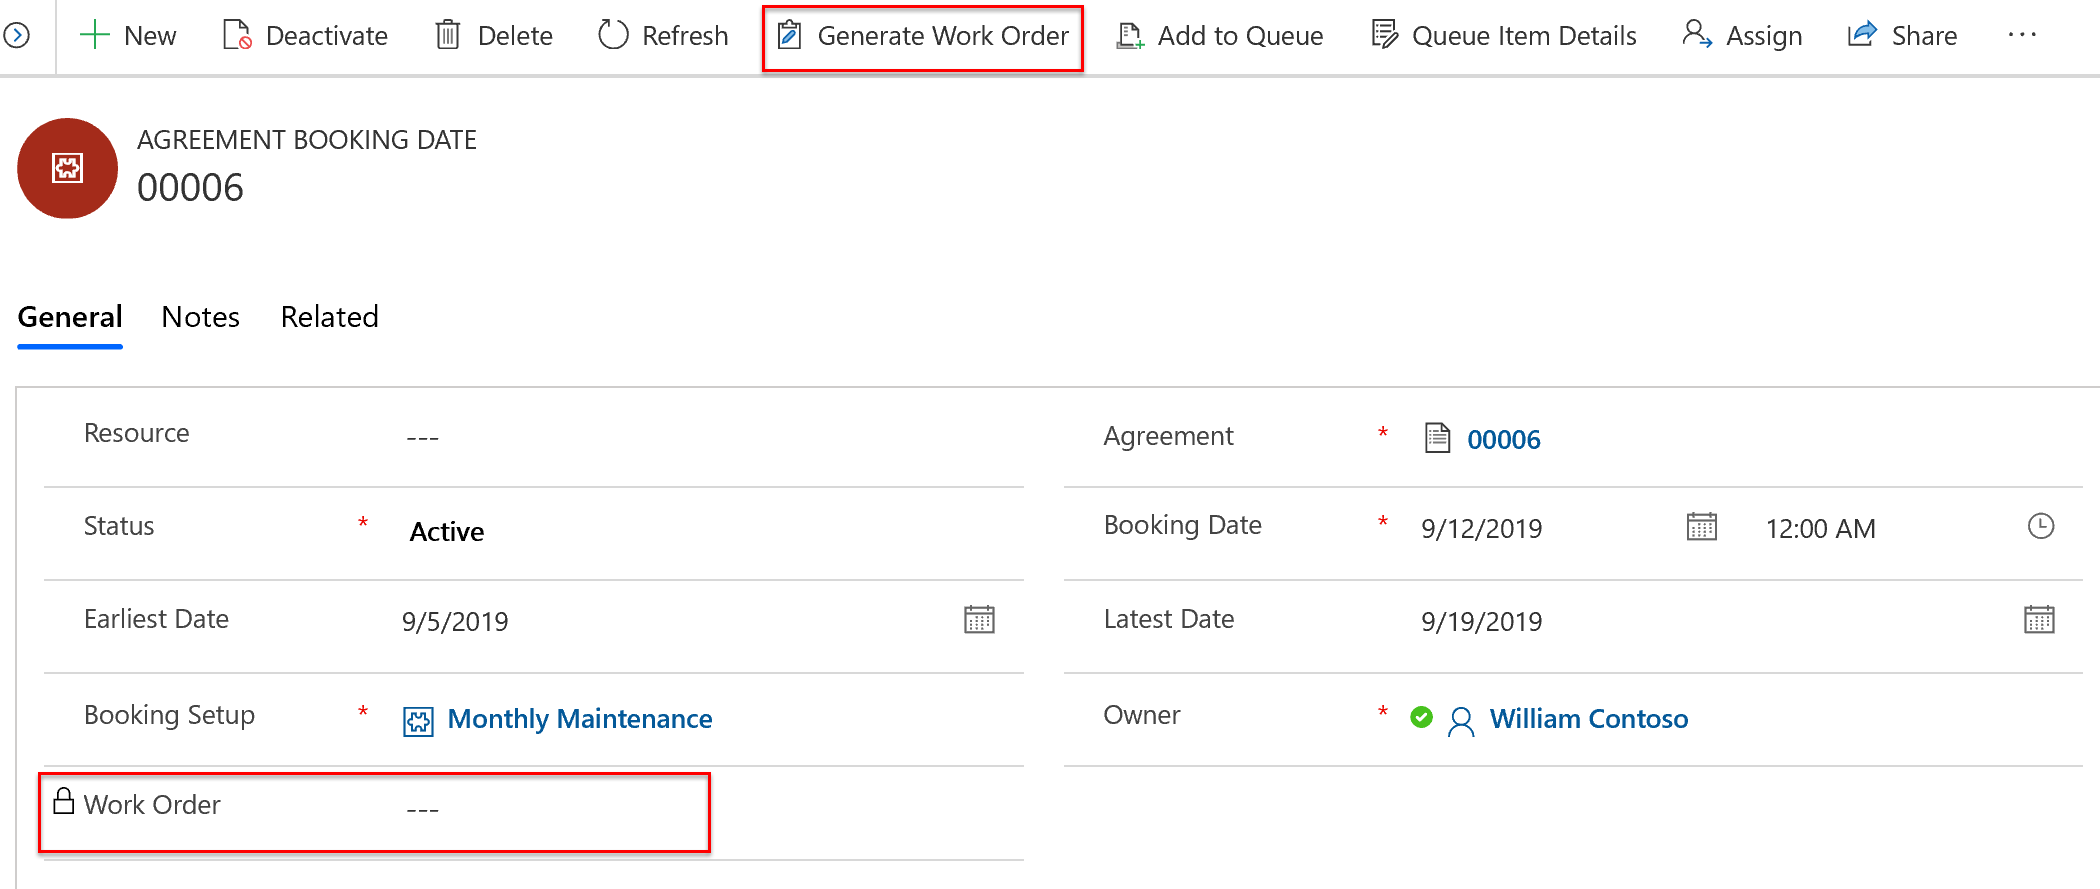 Снимок экрана даты резервирования по соглашению, с фокусом на параметре создания заказа на работу.